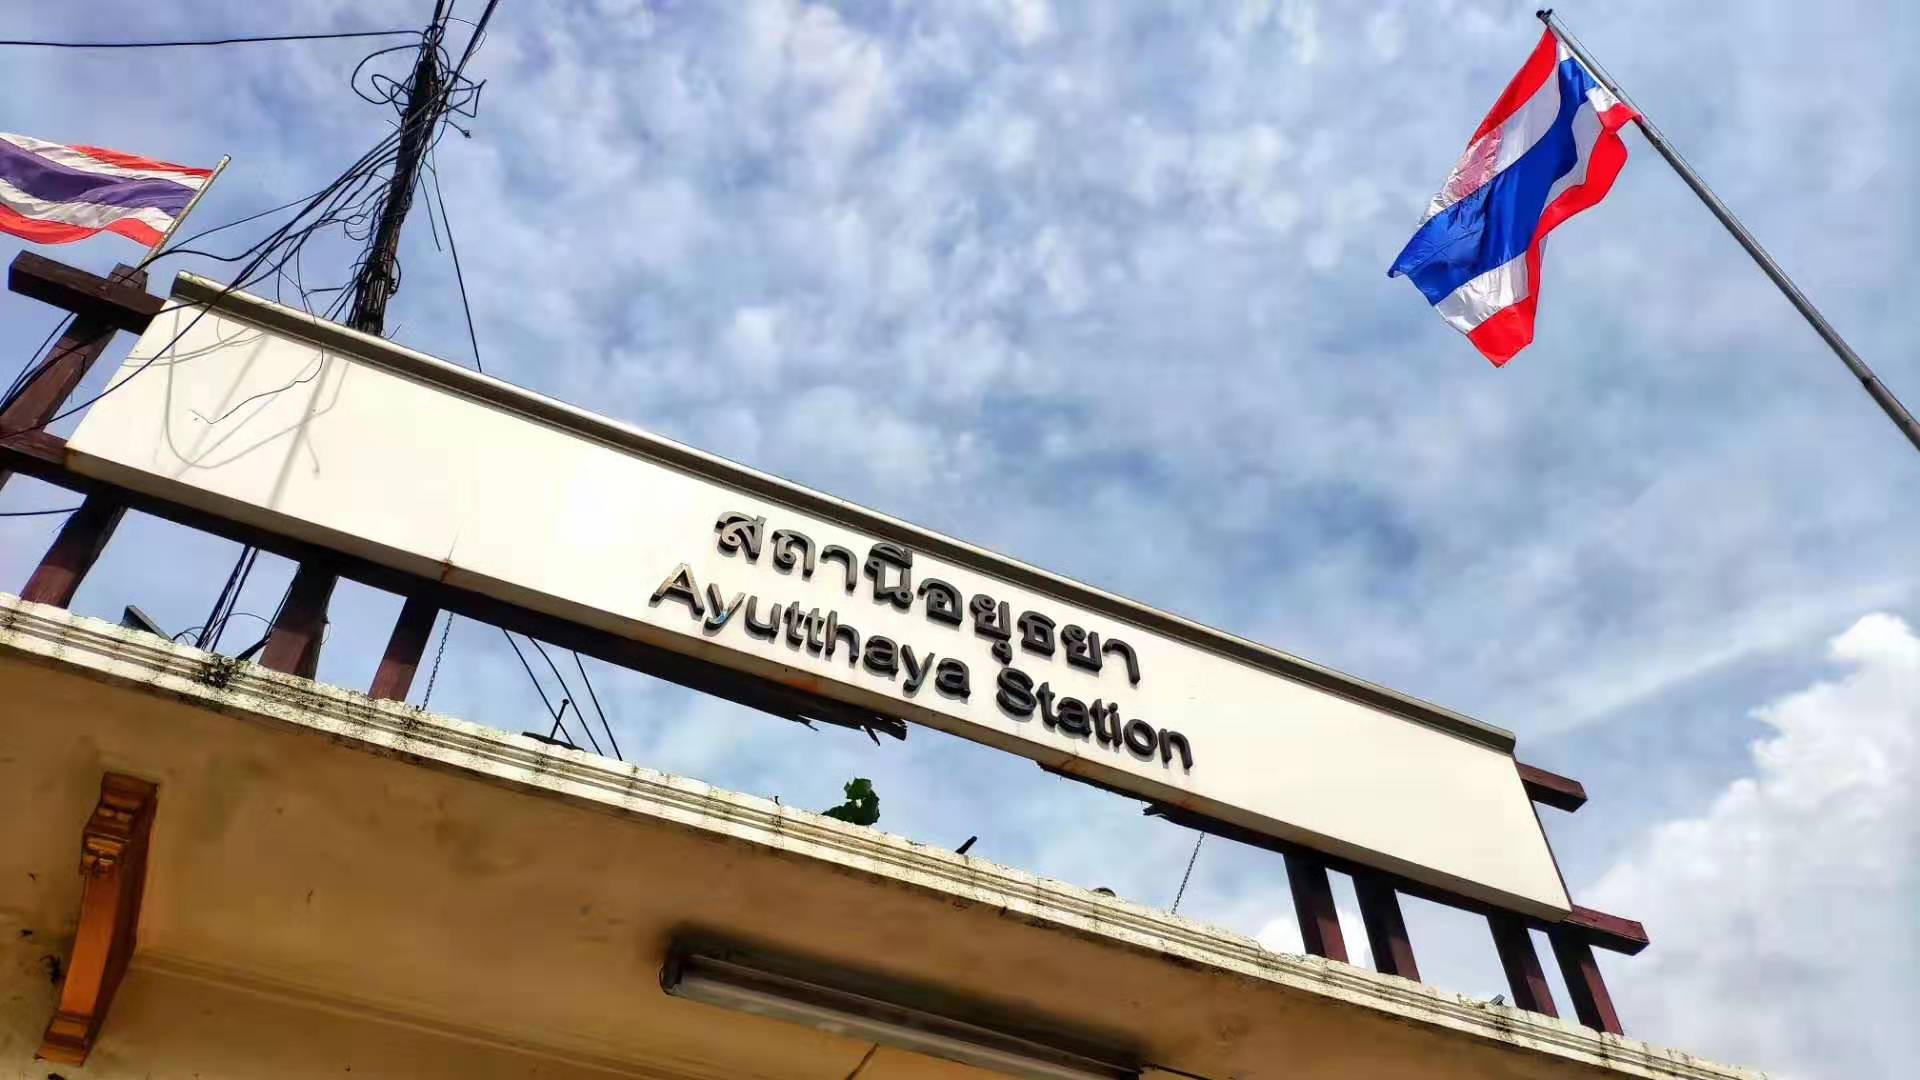 Ayutthaya Station - 01.jpg